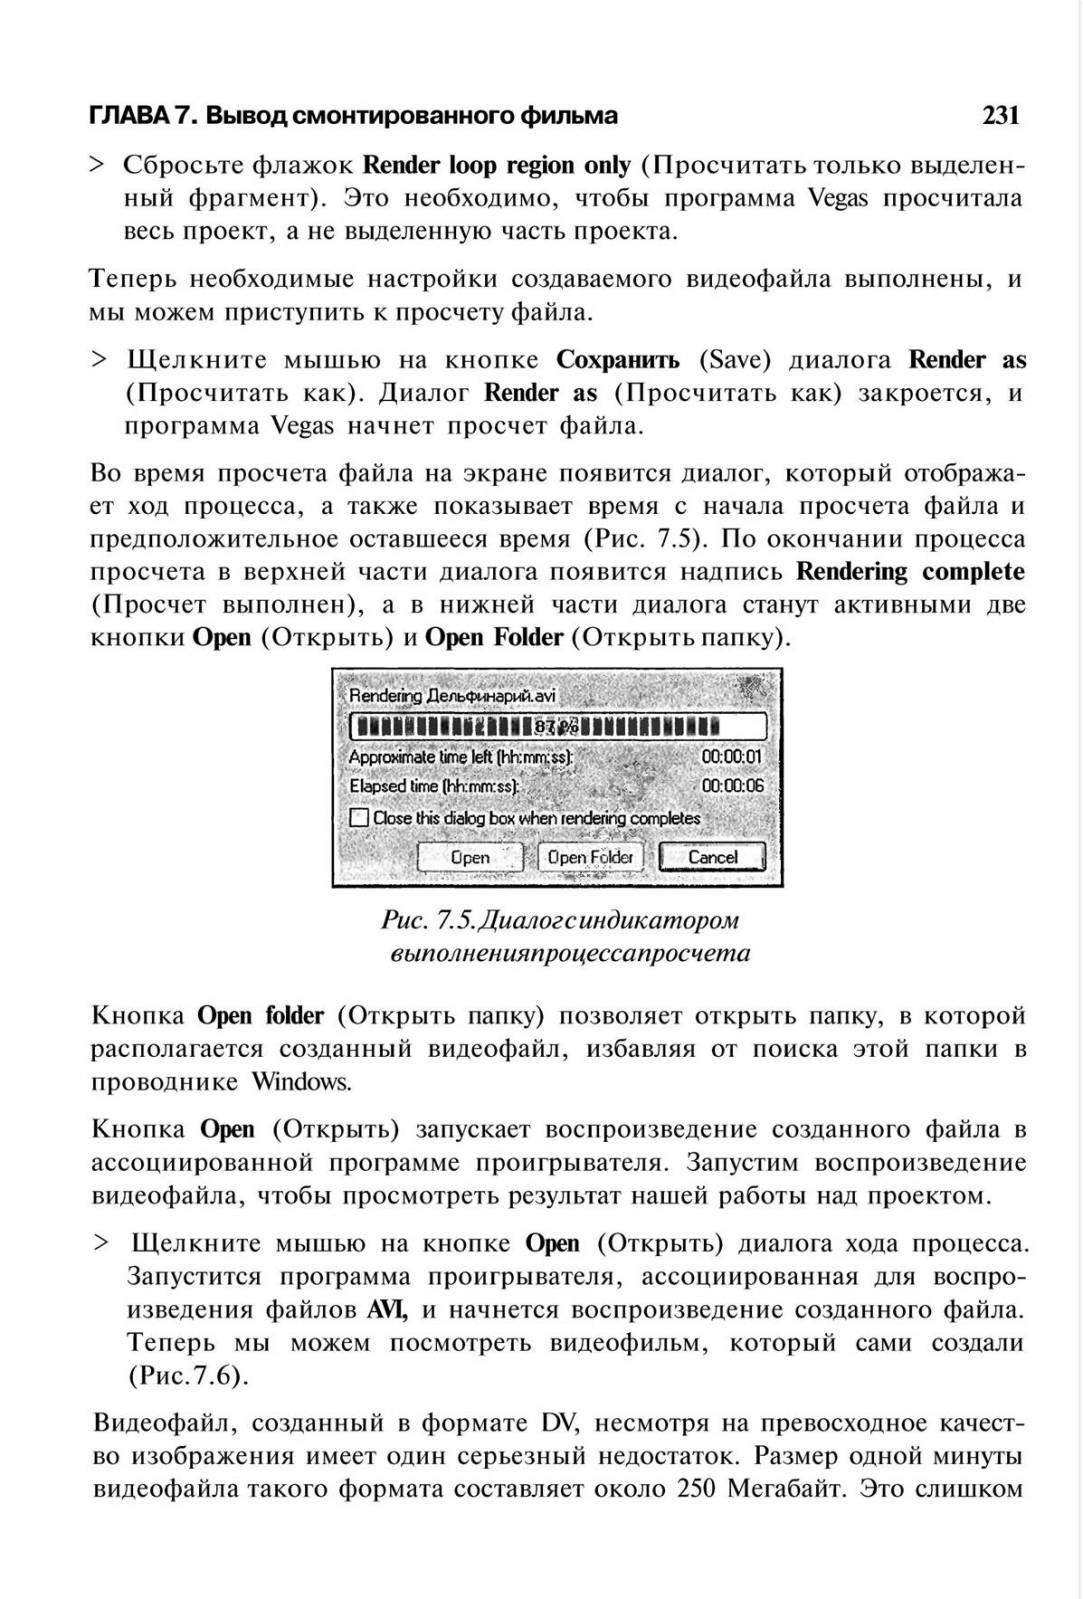 http://redaktori-uroki.3dn.ru/_ph/14/517840220.jpg